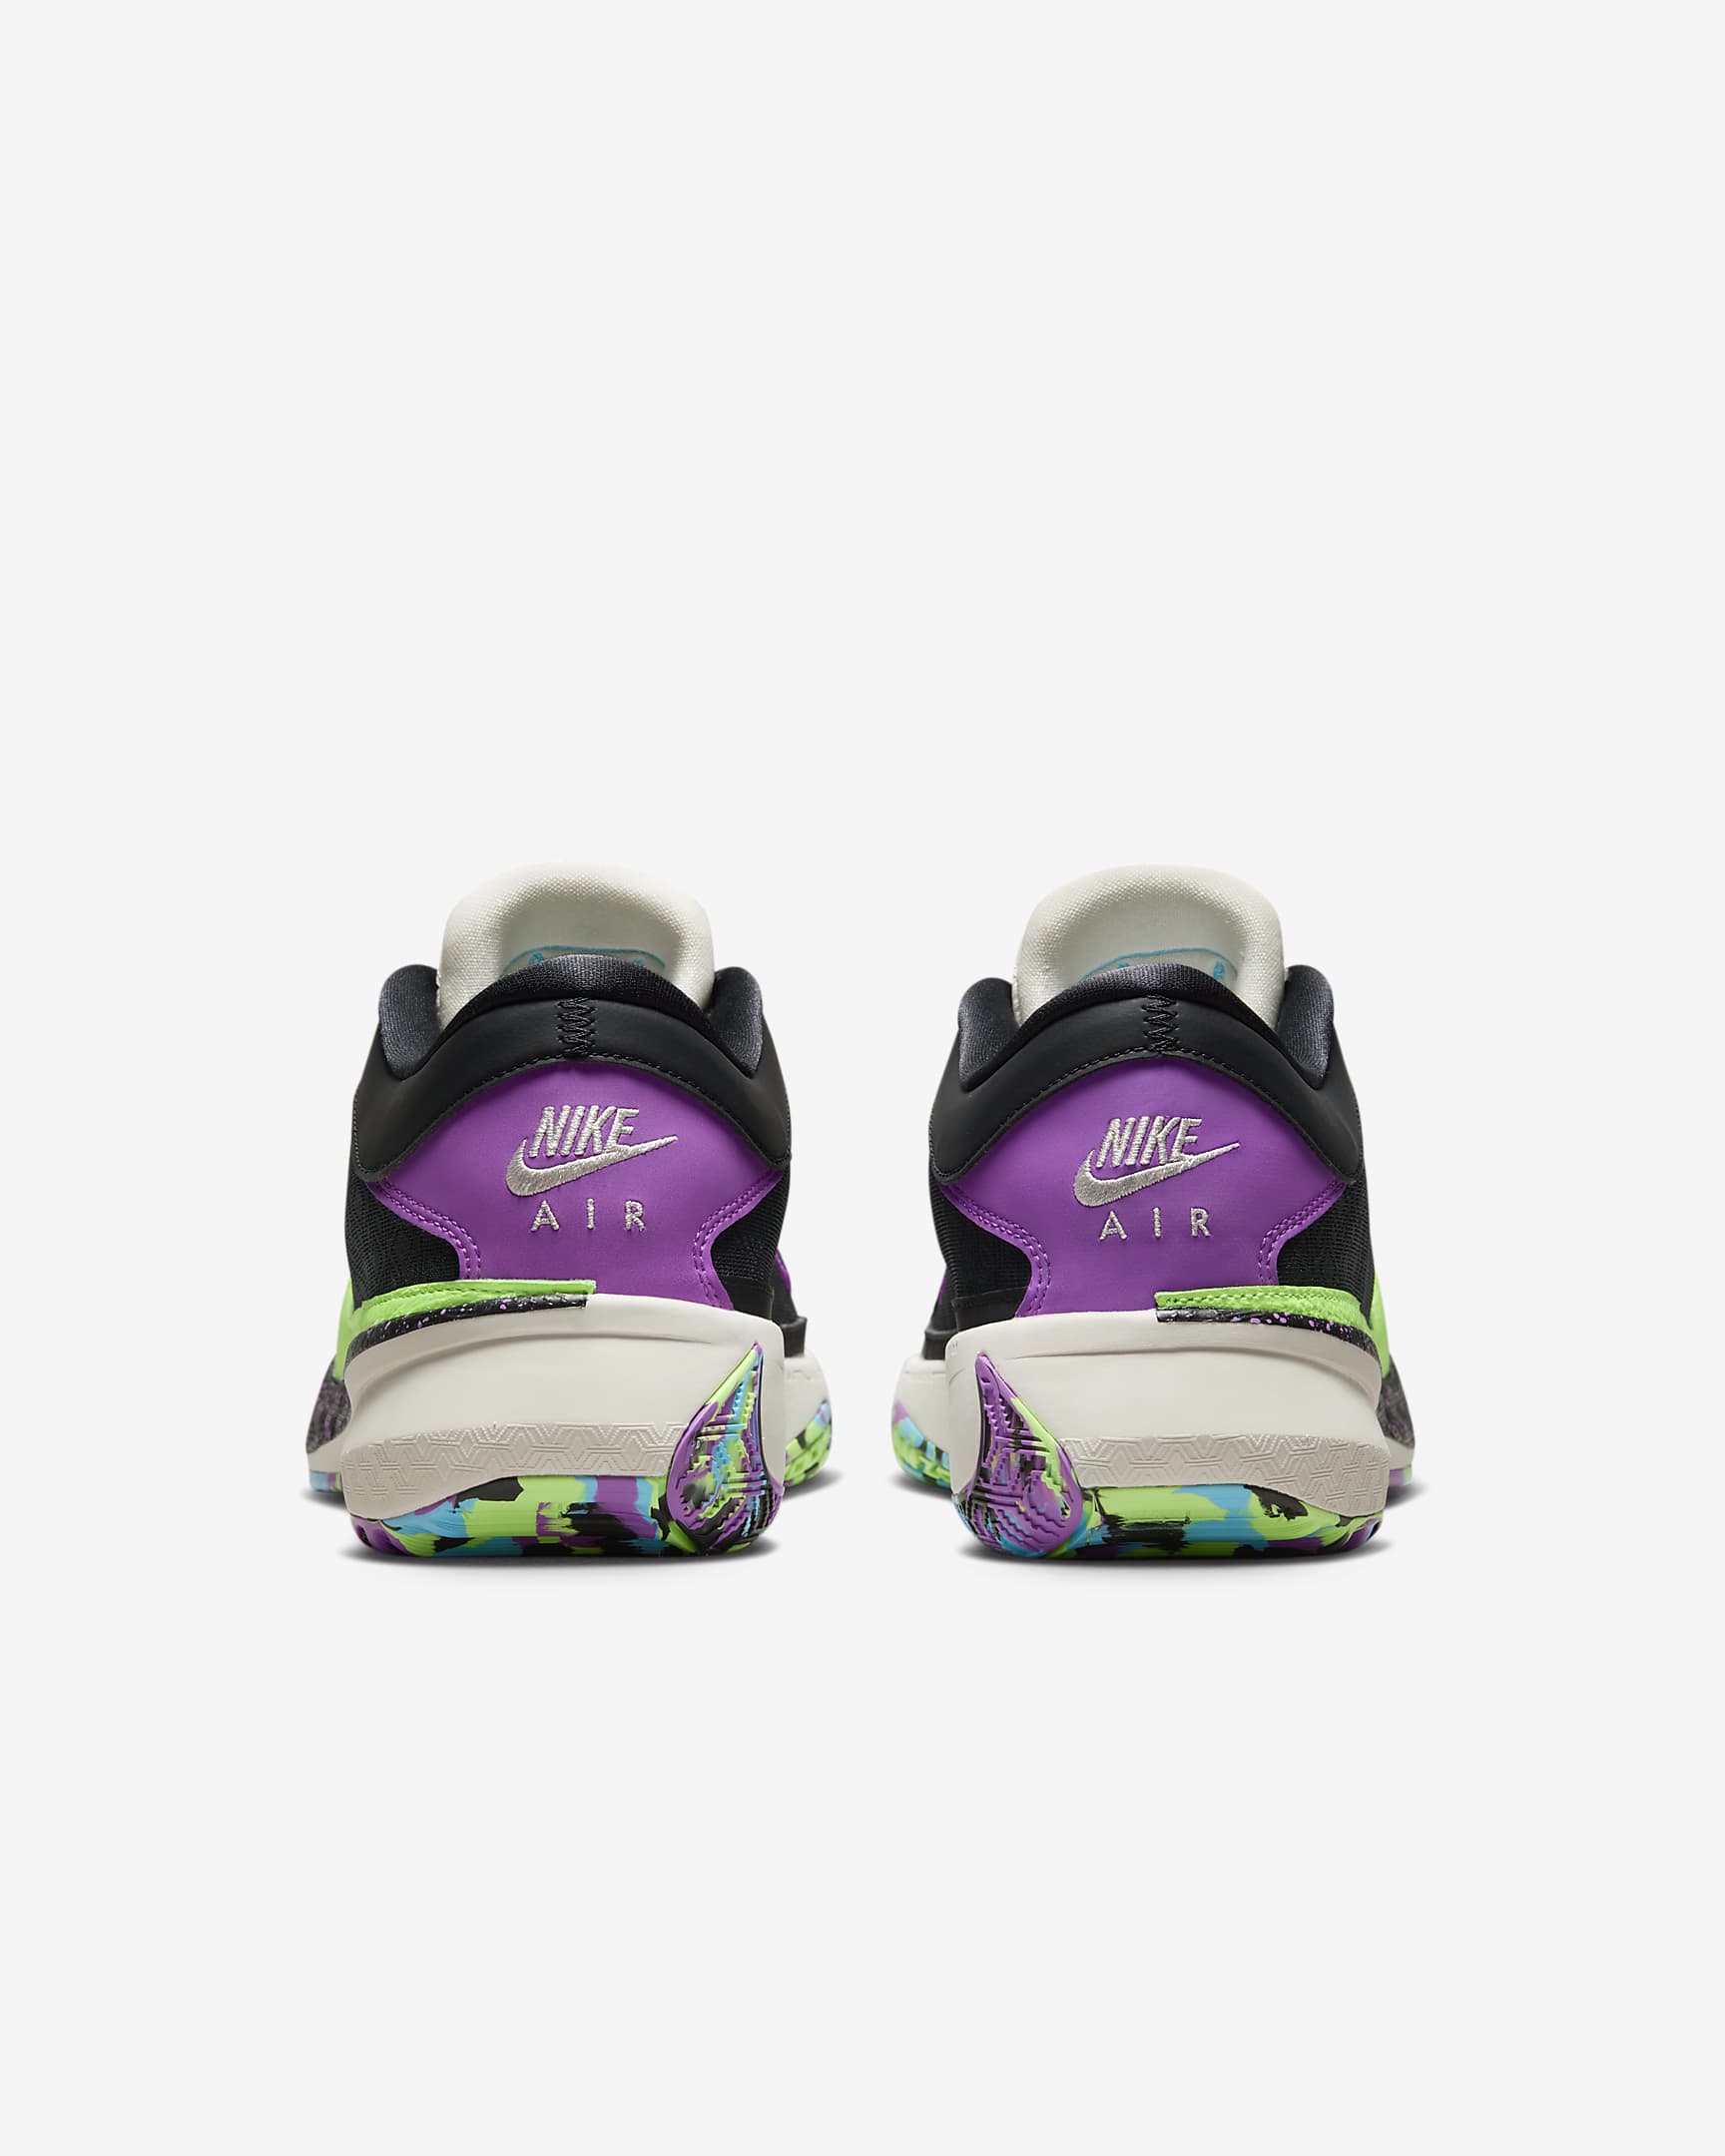 Giannis Freak 5 'Made in Sepolia' Basketball Shoes. Nike BG